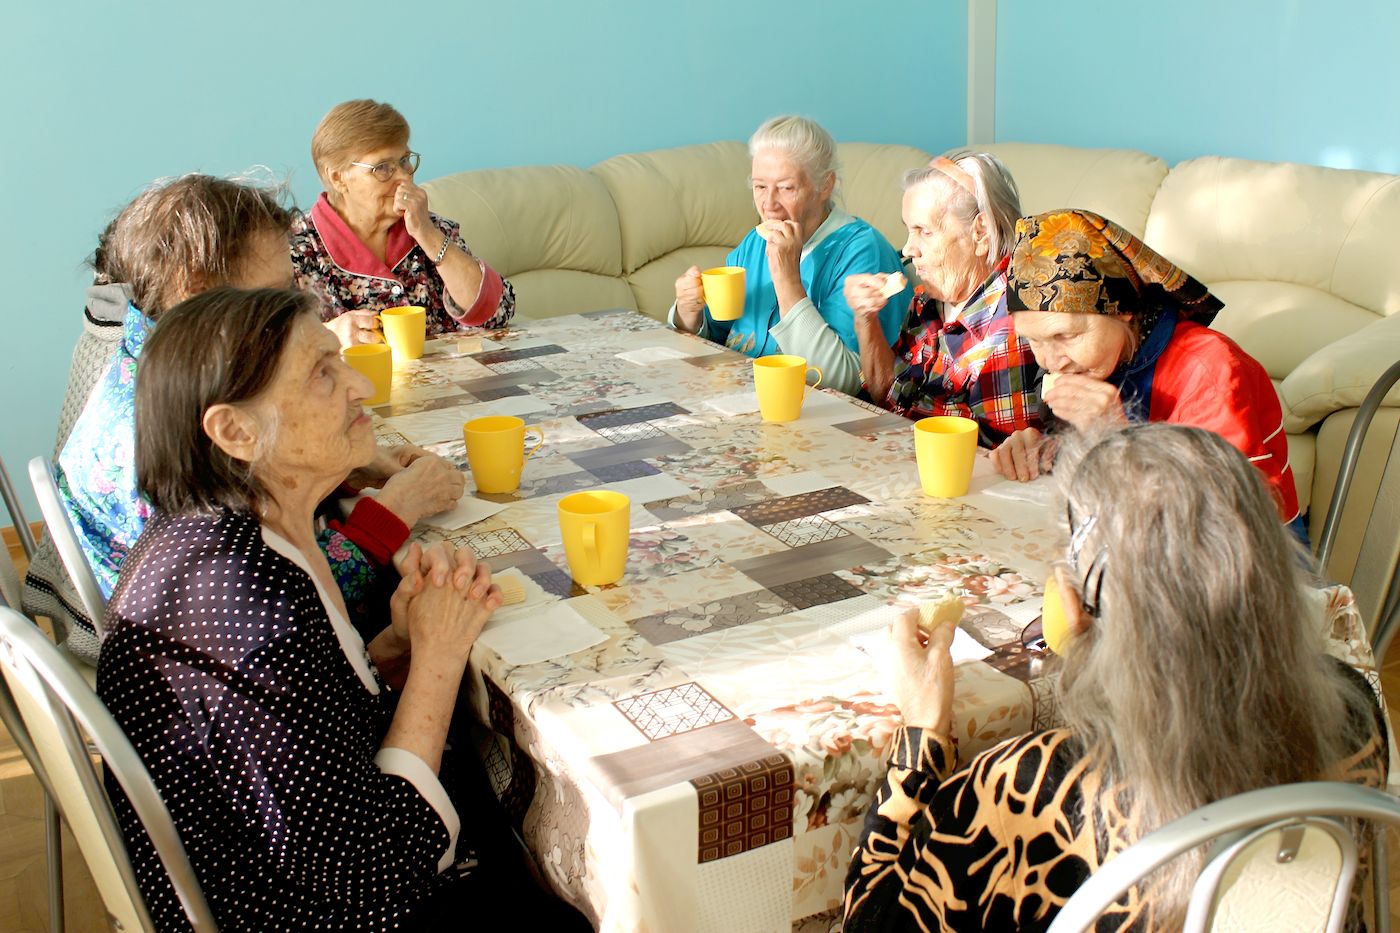 Сценарий программ для пожилых людей. Аврорины зори пансионат Коркино для престарелых. Пансионат для пожилых людей. Пансионат для пожилых людей и инвалидов. Развлечения для пенсионеров.